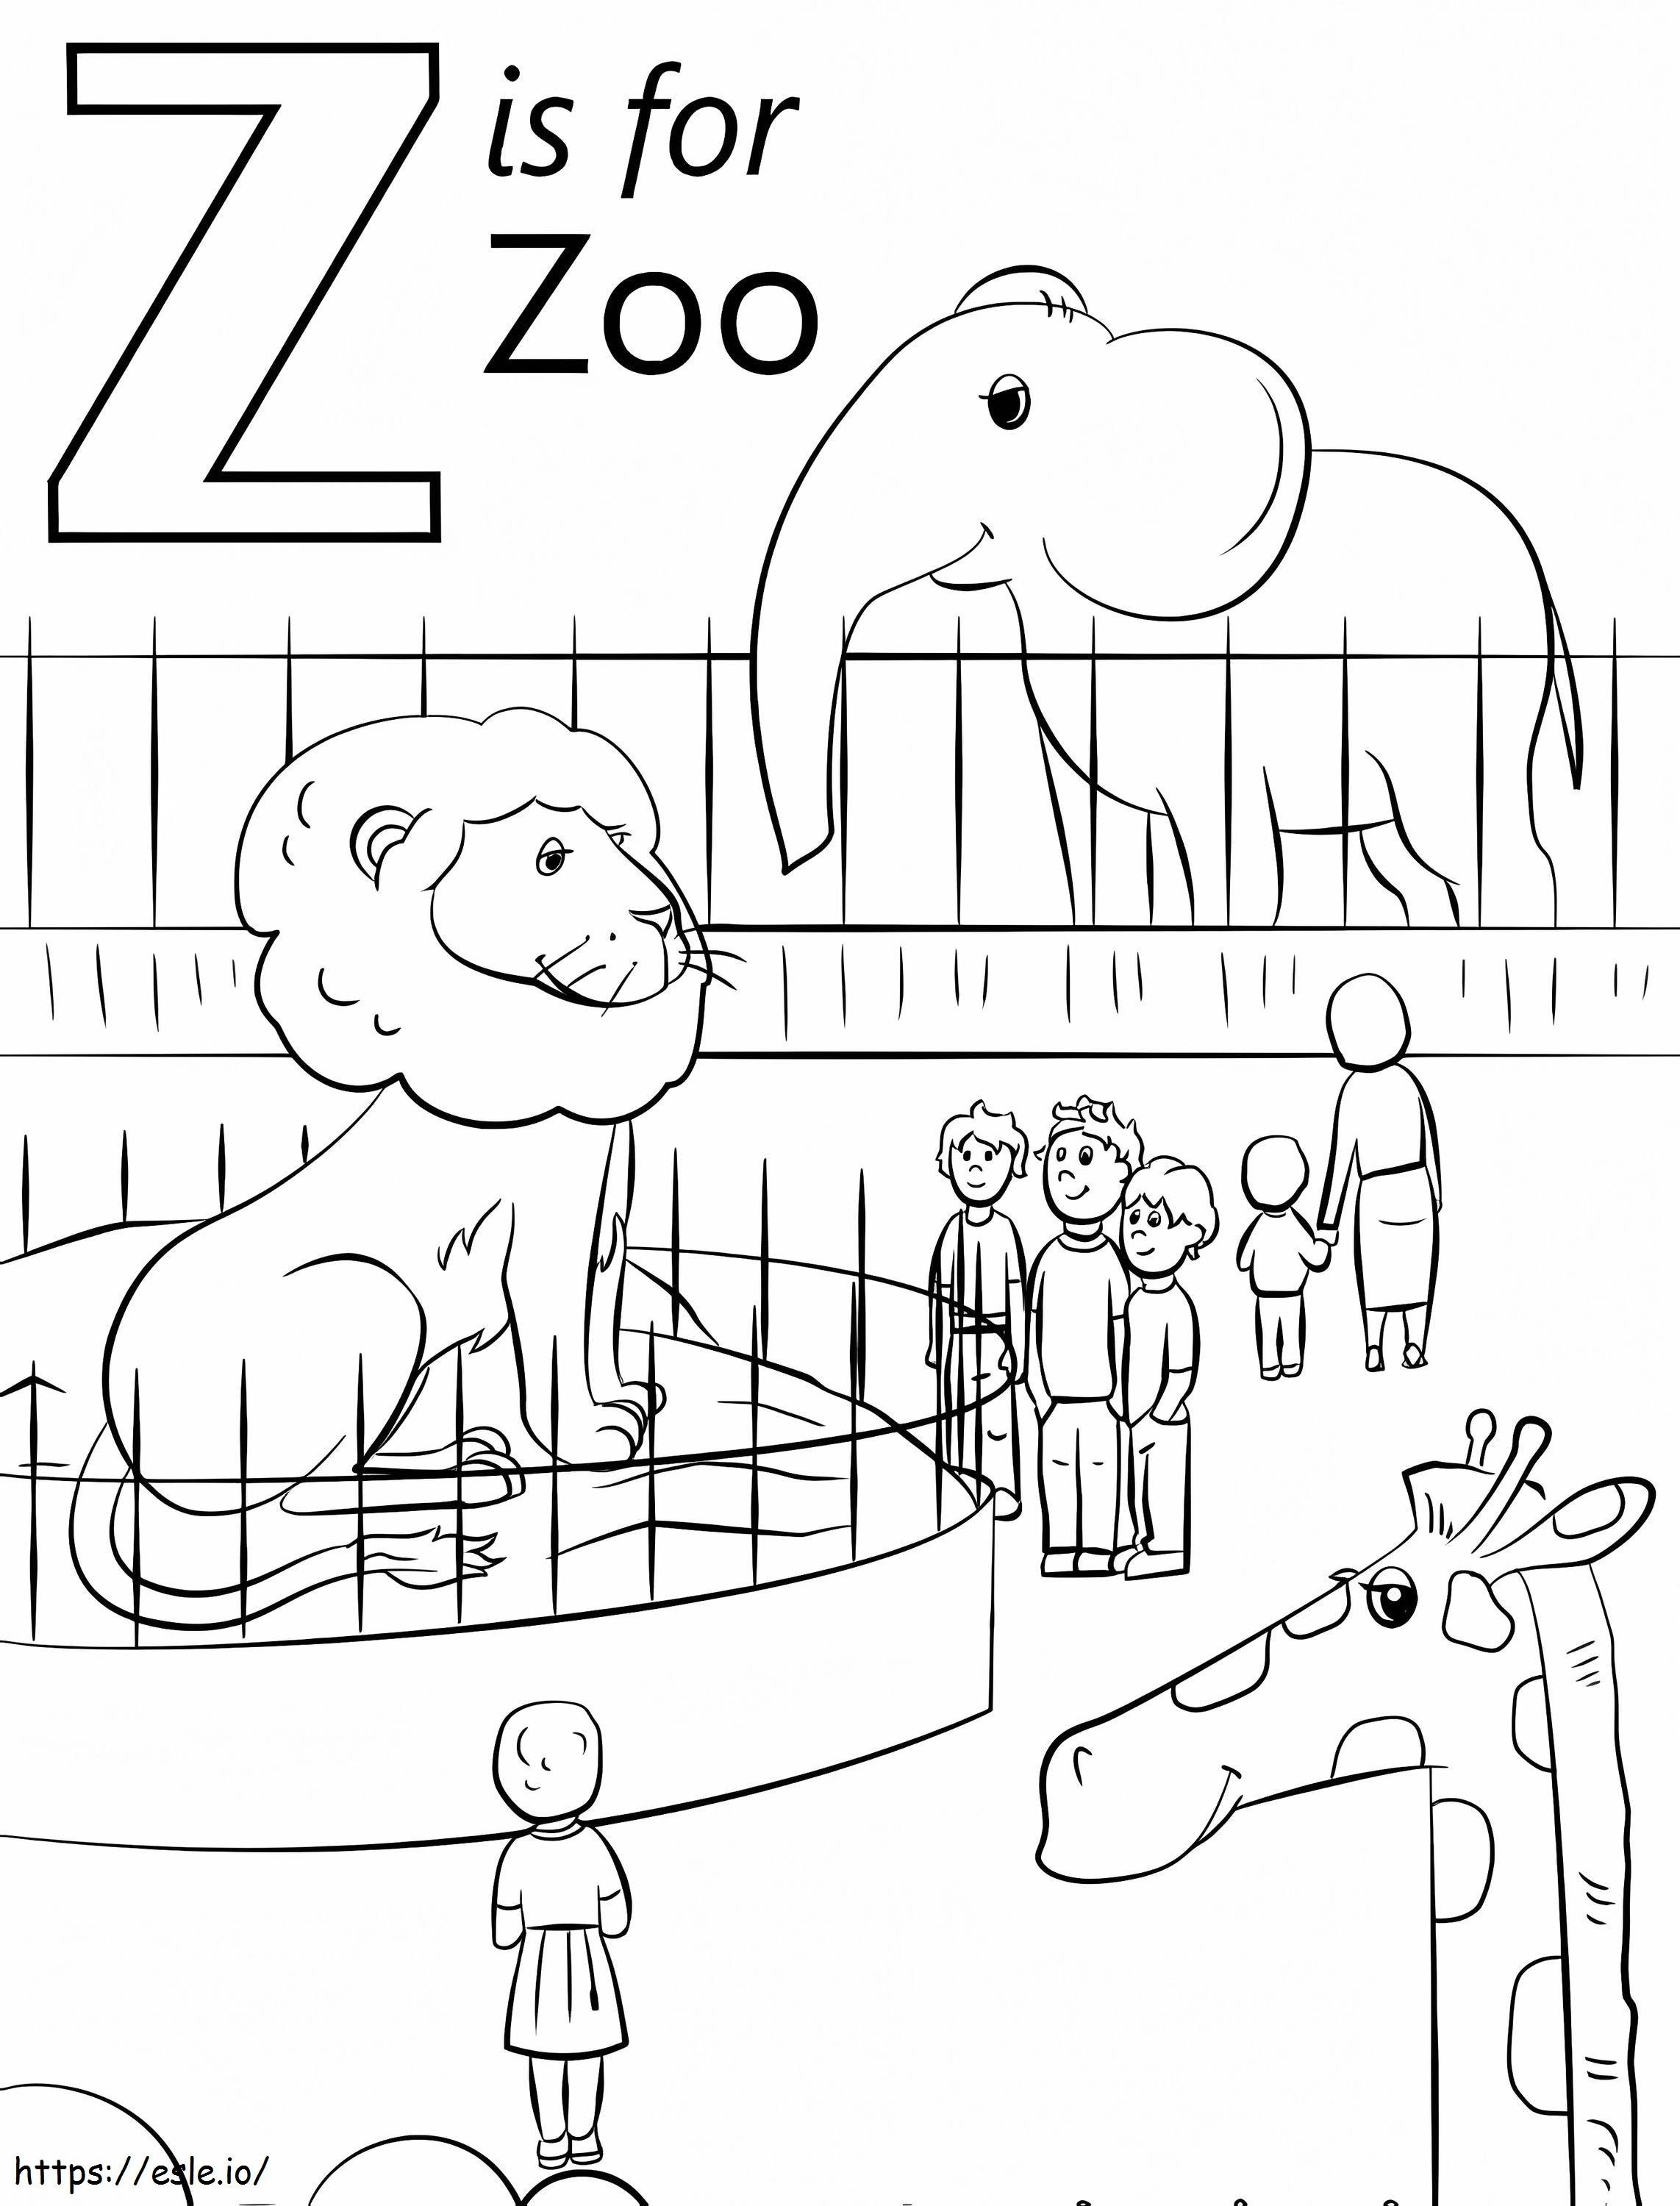 Coloriage Zoo Lettre Z à imprimer dessin